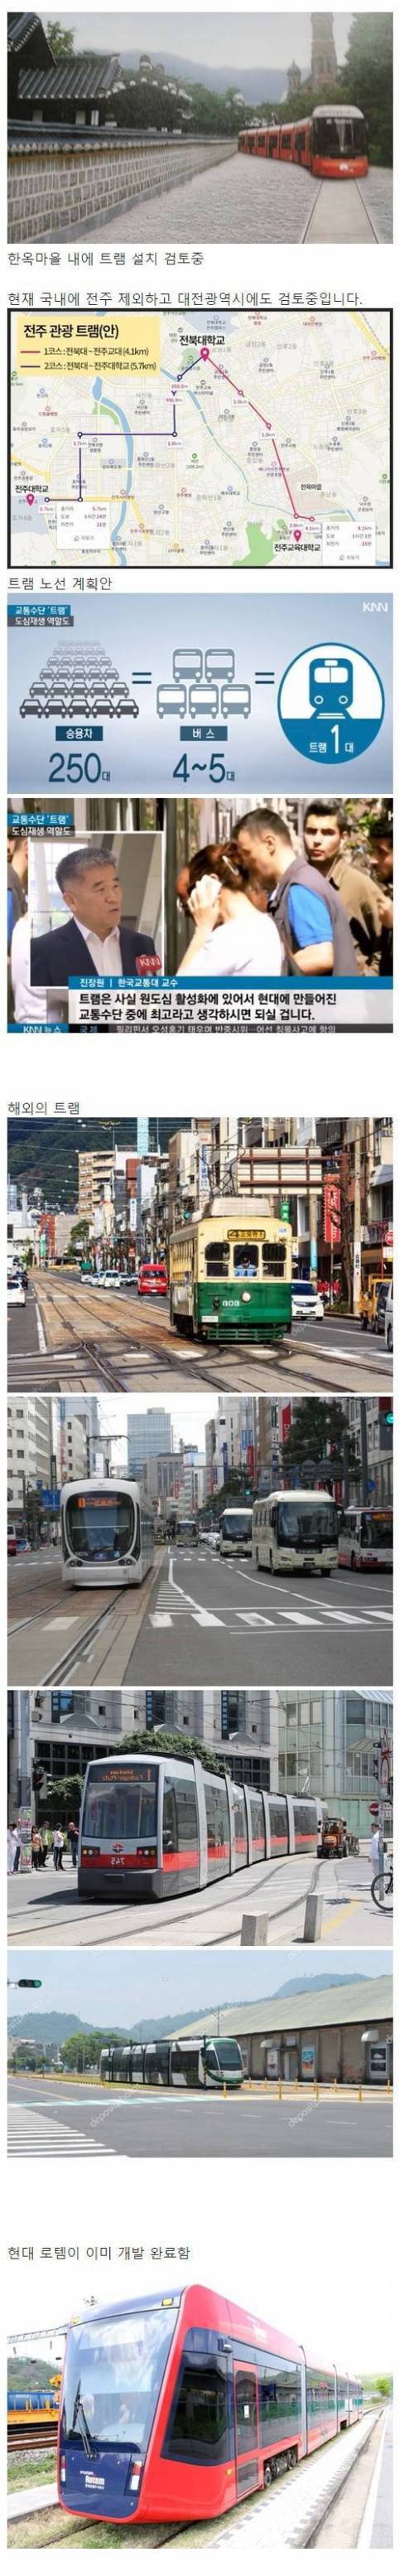 전주시 트램 도입 계획.jpg